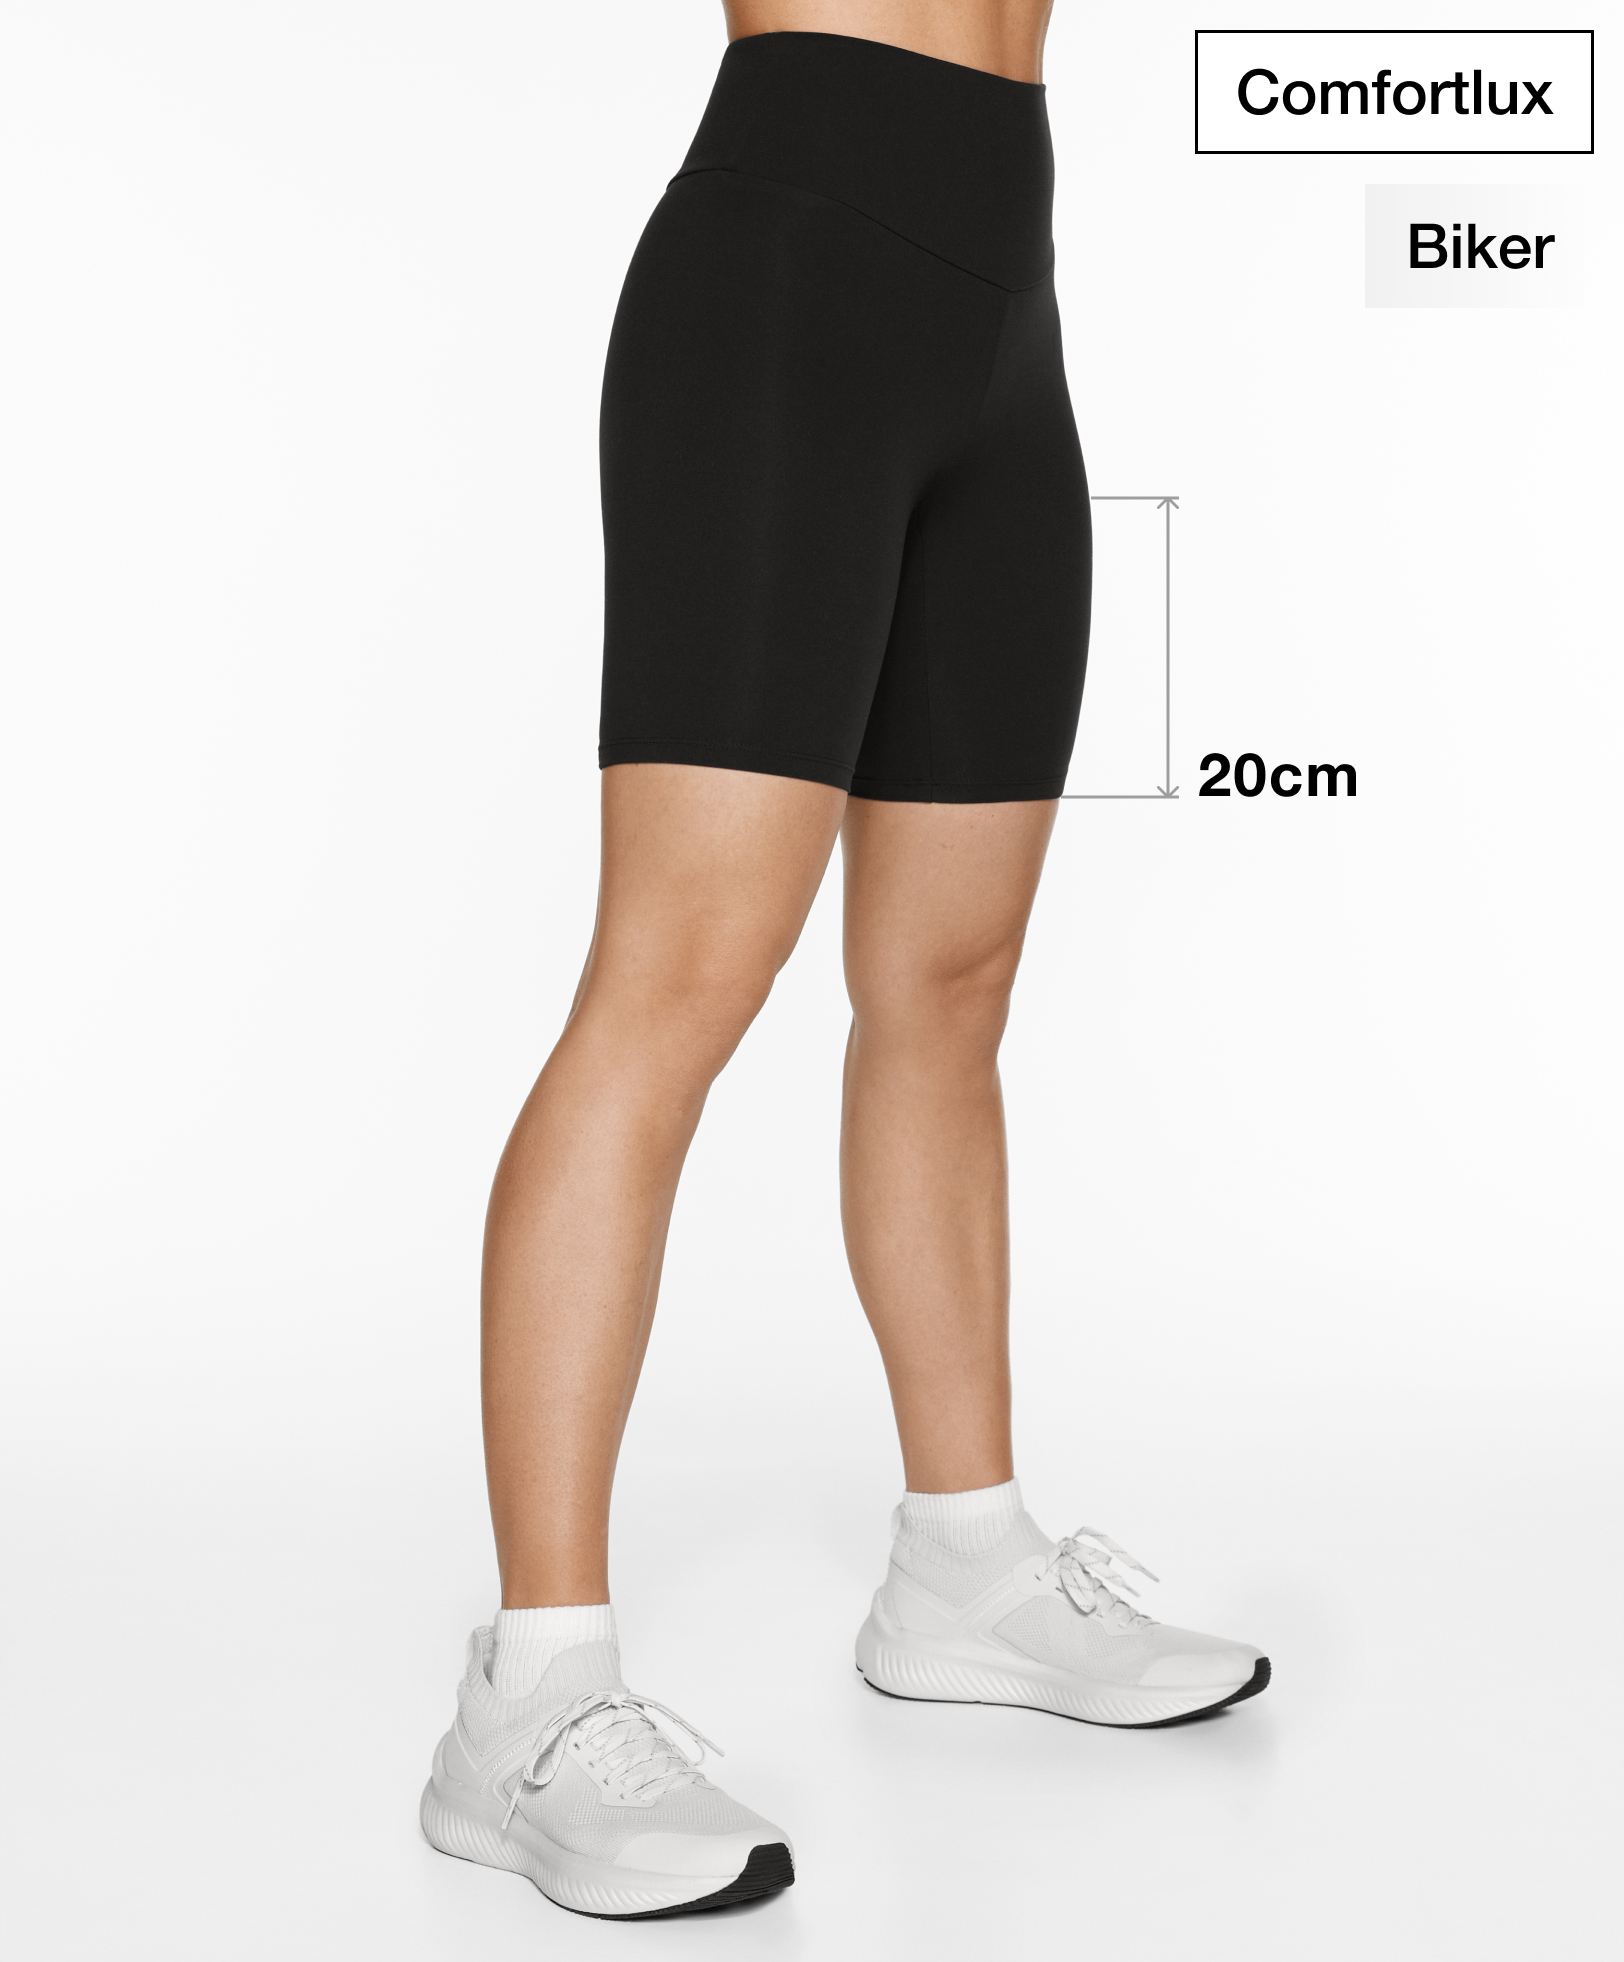 20cm I 25cm biker leggings - Leggings